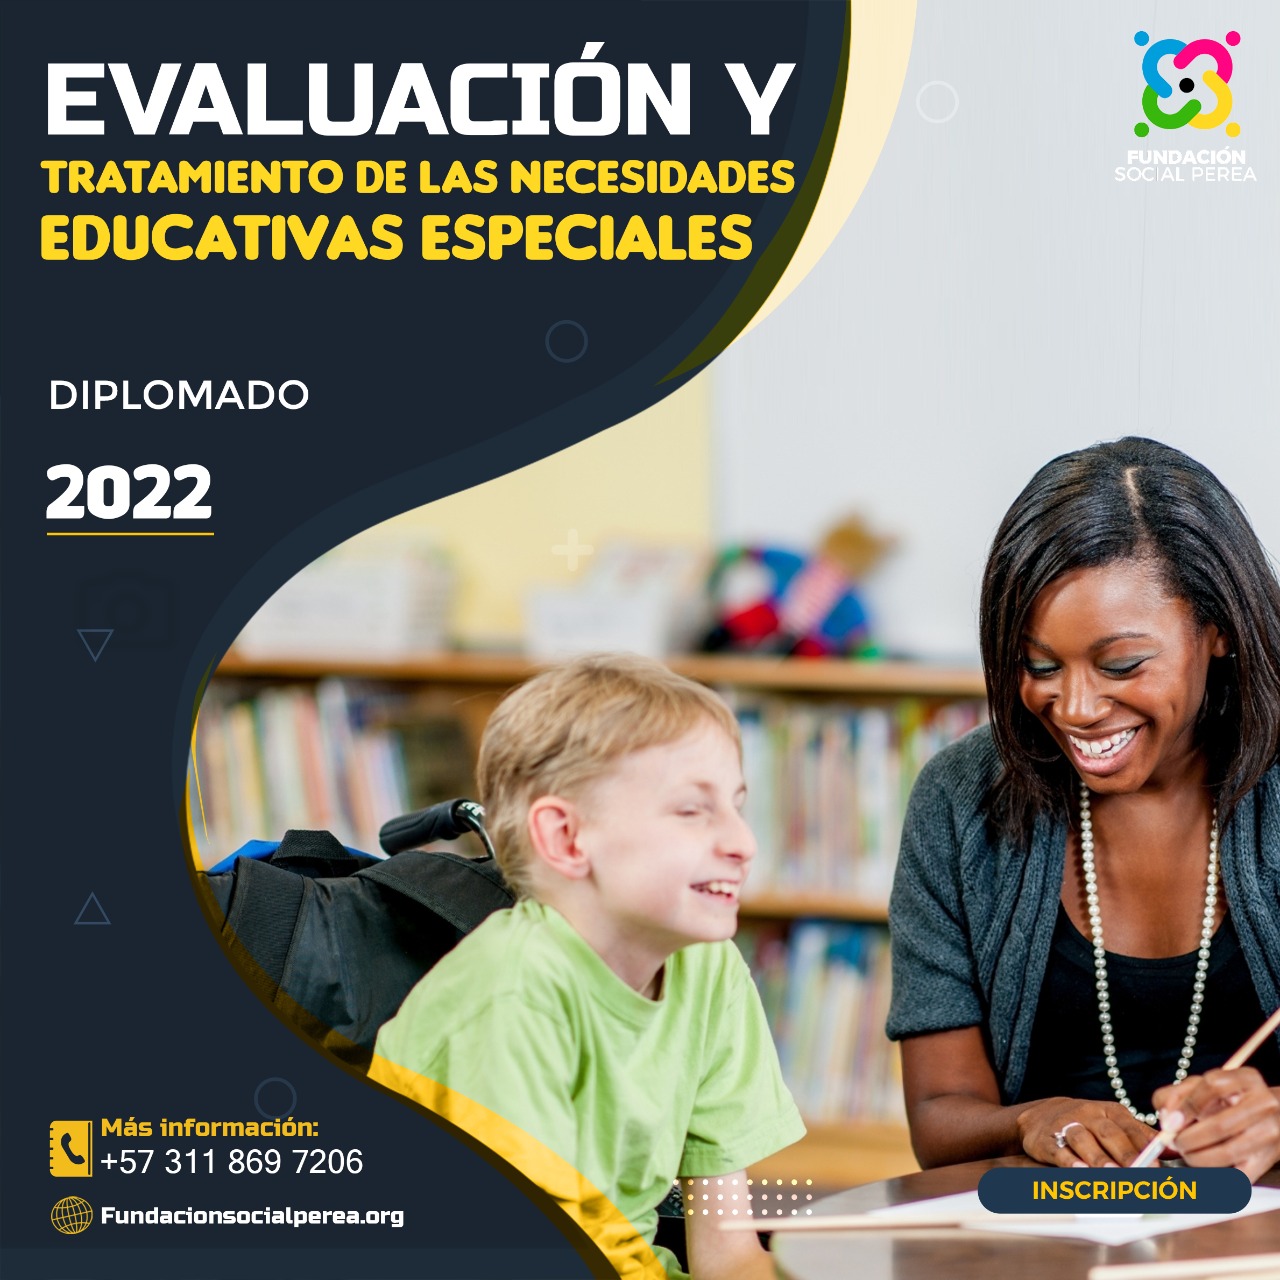 EVALUACIÓN Y TRATAMIENTO DE LAS NECESIDADES EDUCATIVAS ESPECIALES.